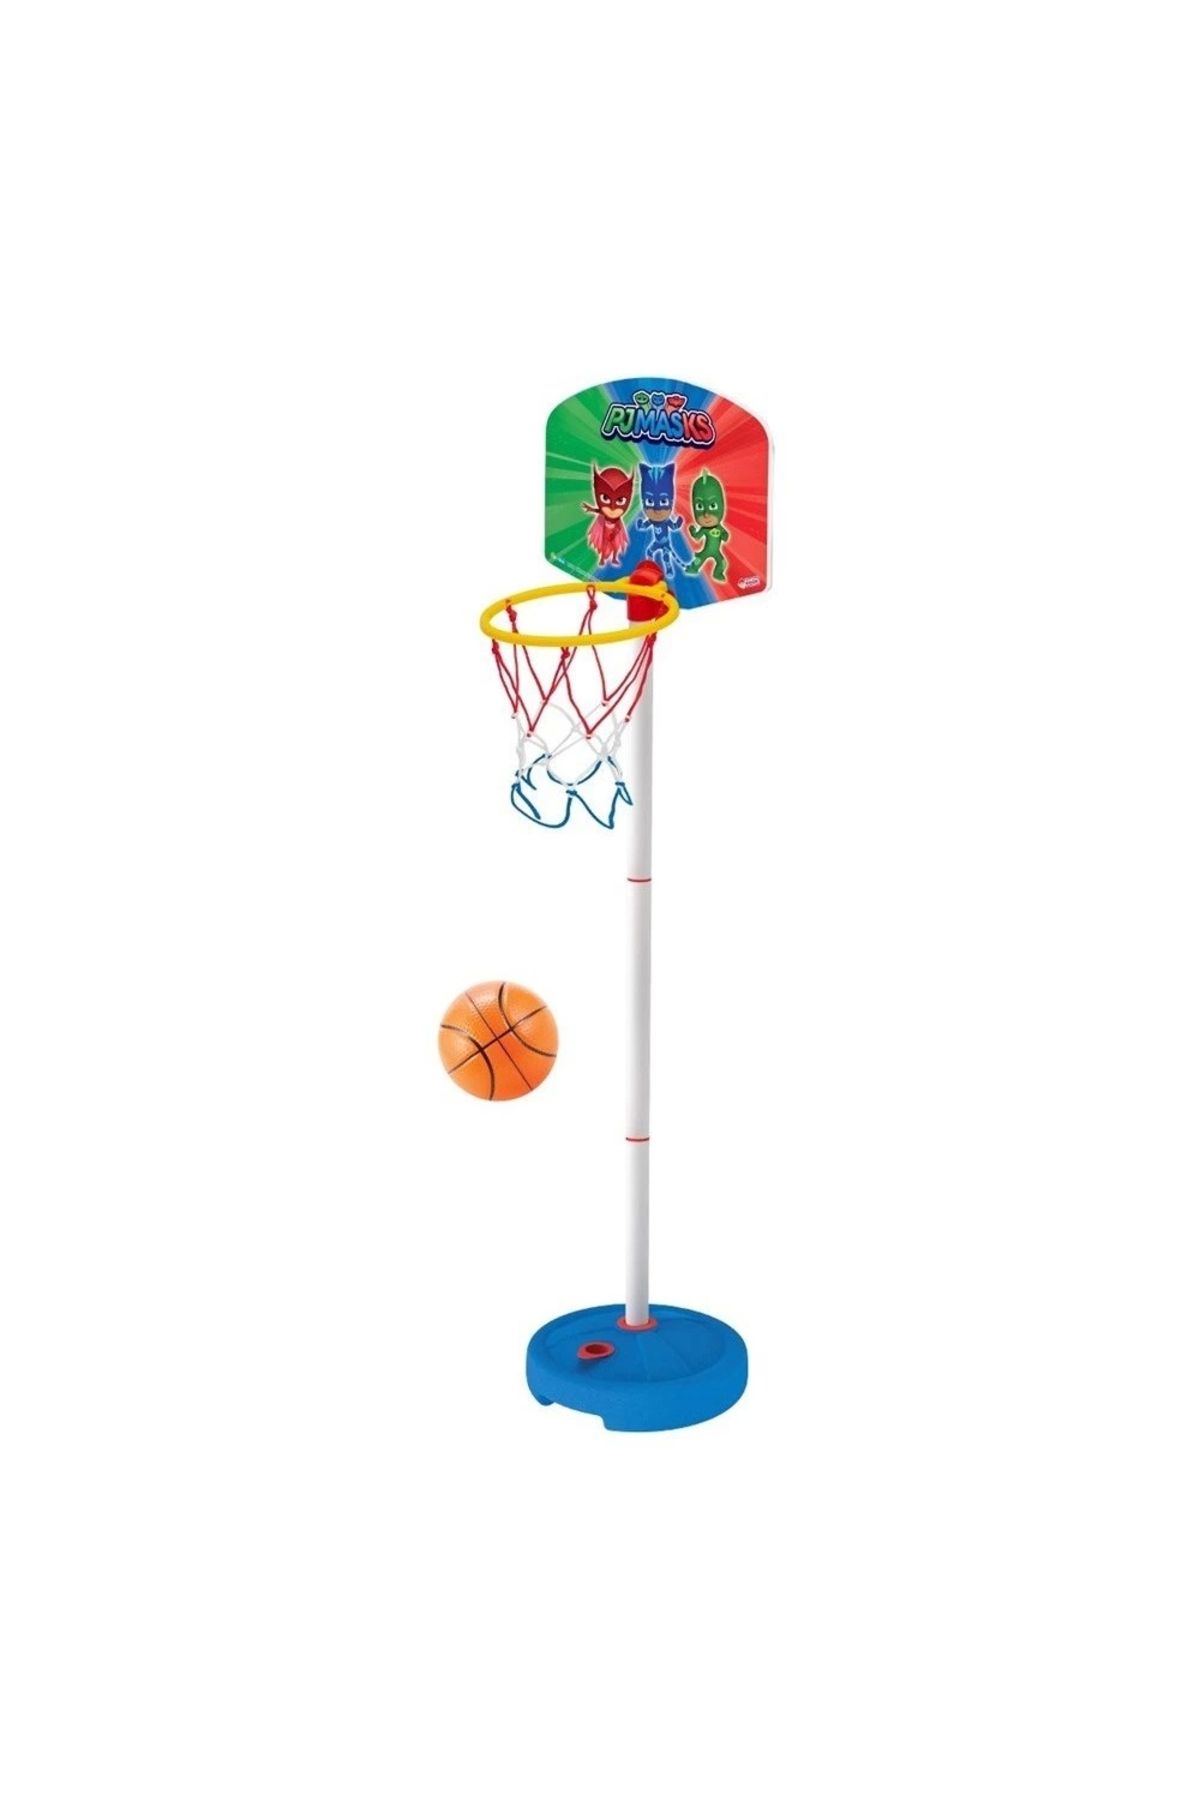 DEDE Pjmasks Küçük Ayaklı Basketbol Potası